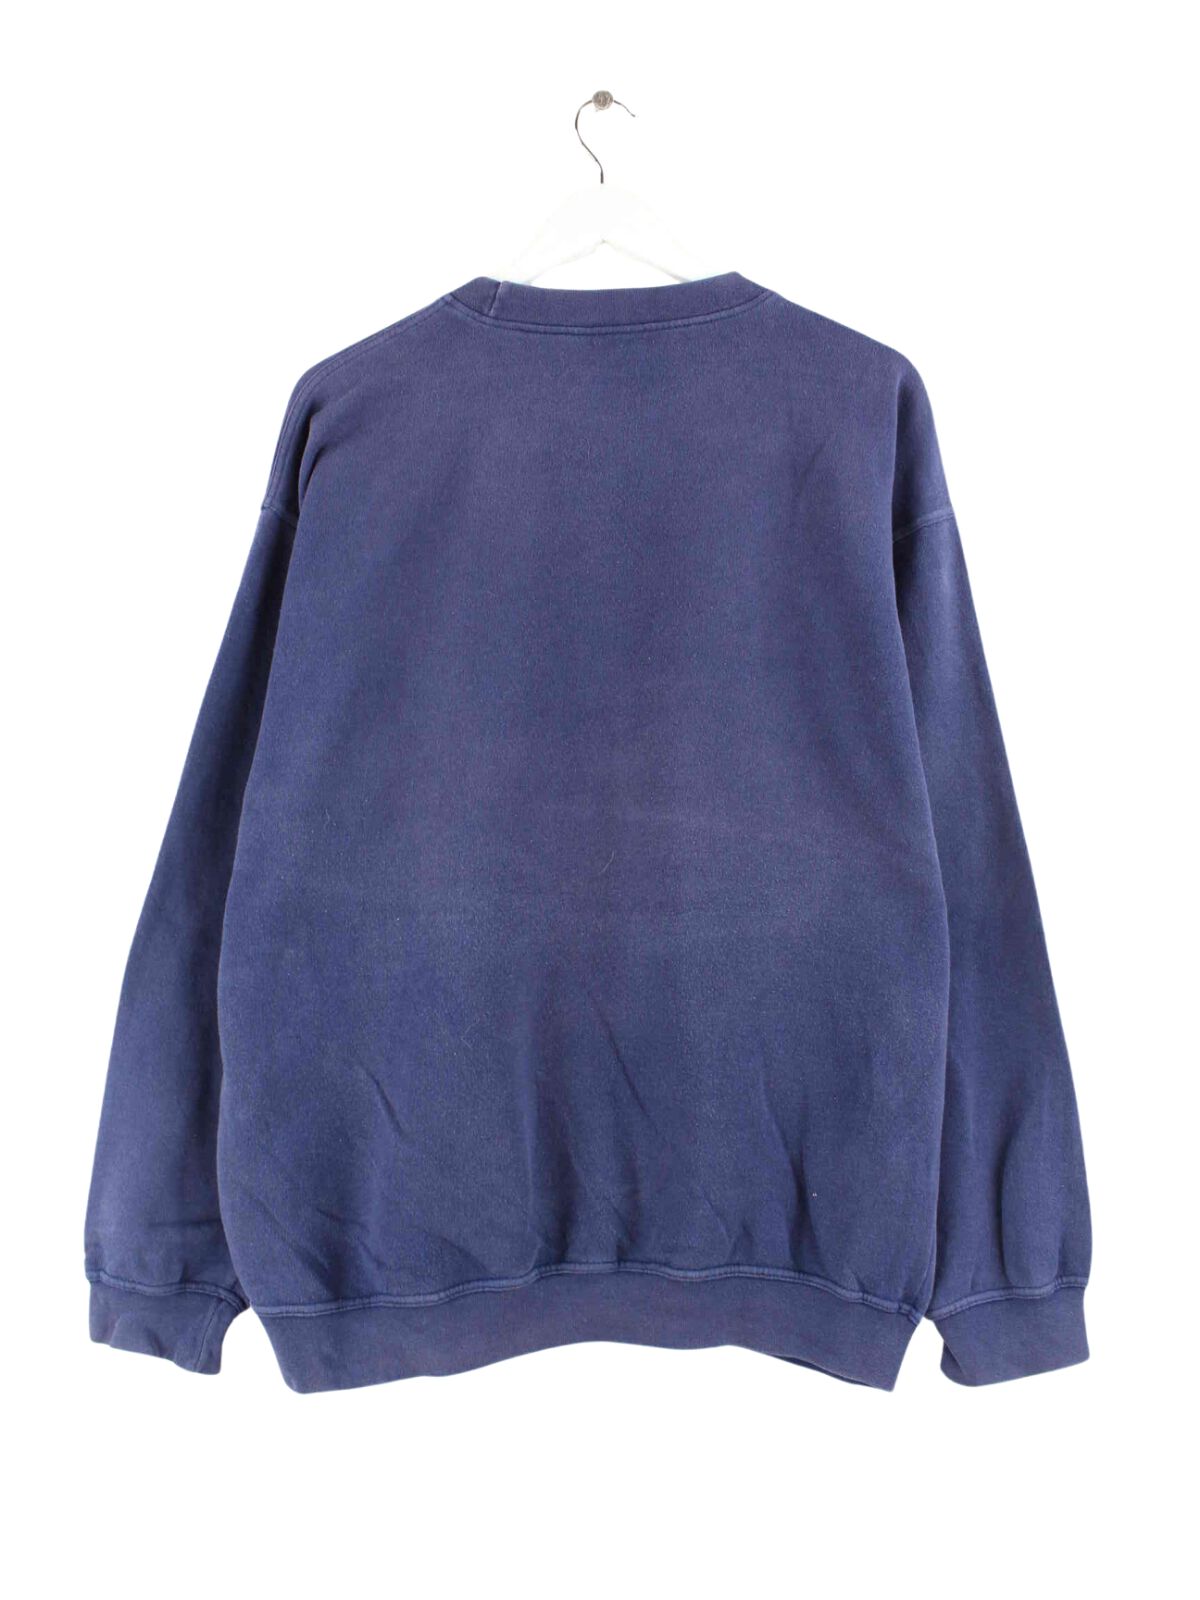 Adidas 90s Vintage Basic Sweater Blau XL (back image)